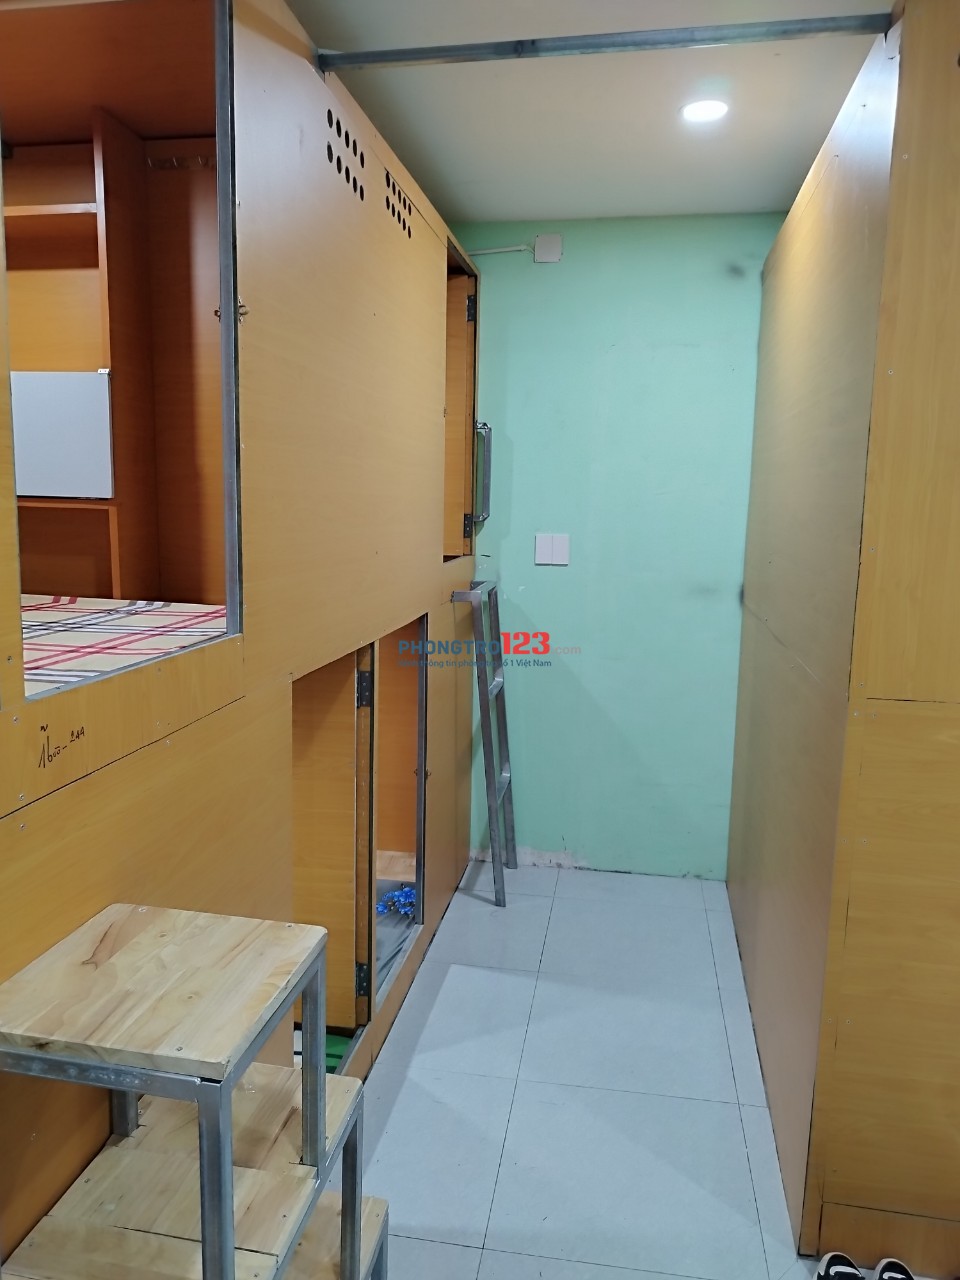 Sleep Box Cao Cấp Riêng Tư 1 Người Ở Giá Rẻ Quận Tân Phú